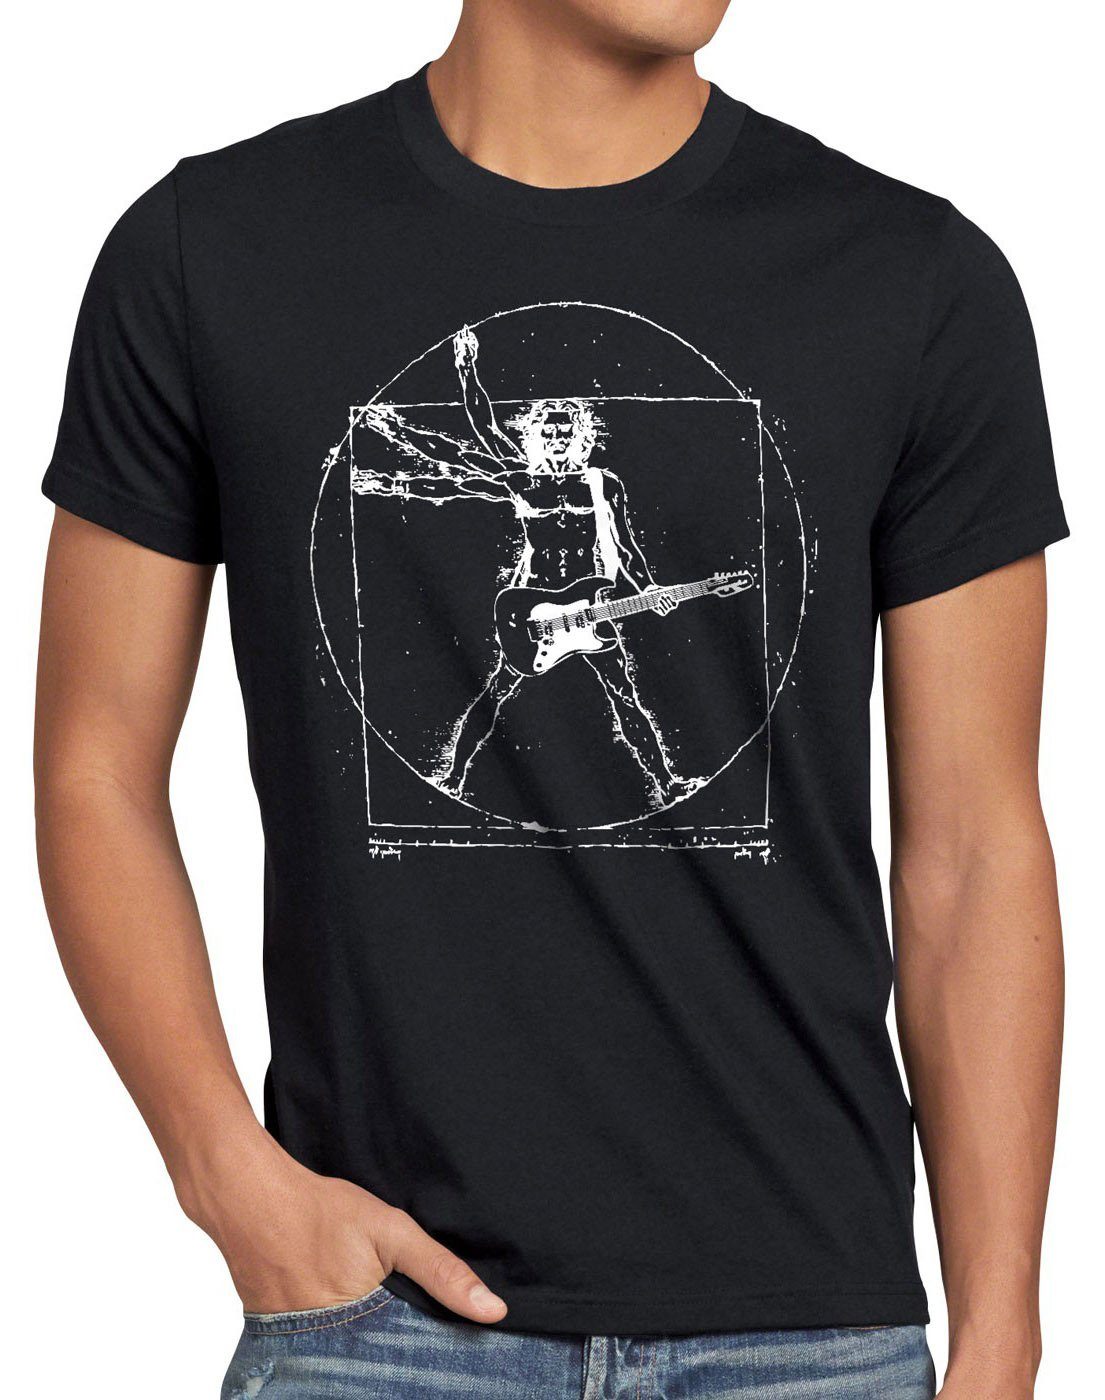 style3 Print-Shirt Herren T-Shirt Da Vinci Rock T-Shirt musik festival gitarre vinyl metal open air wacken mensch schwarz